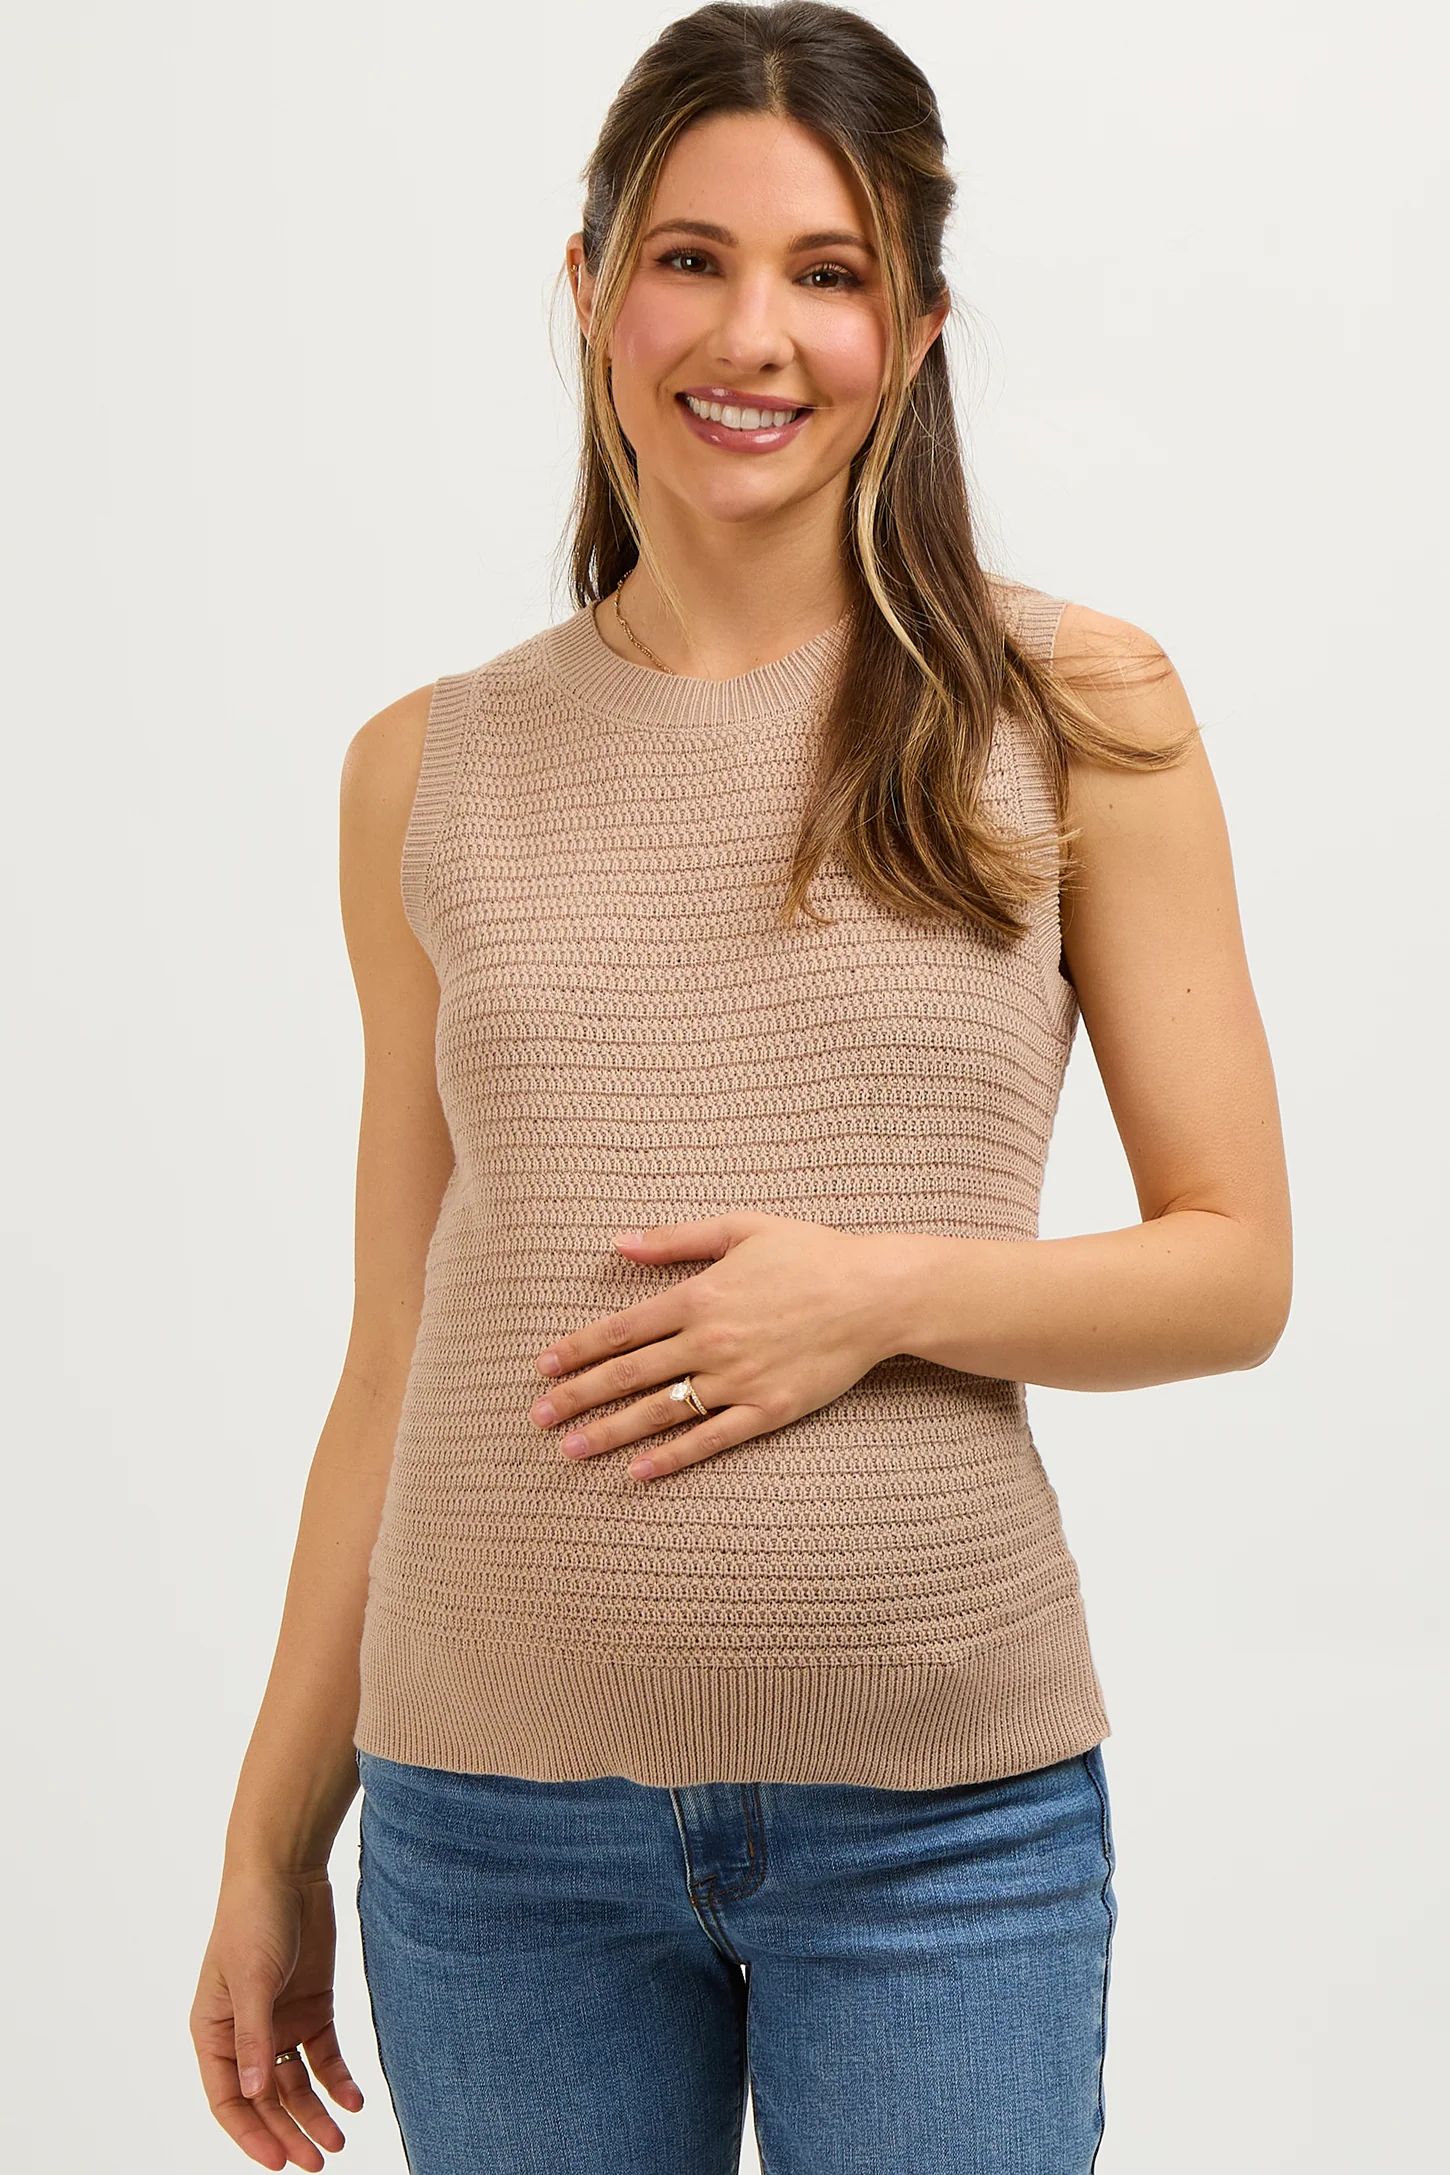 Taupe Knit Sleeveless Maternity Top | PinkBlush Maternity